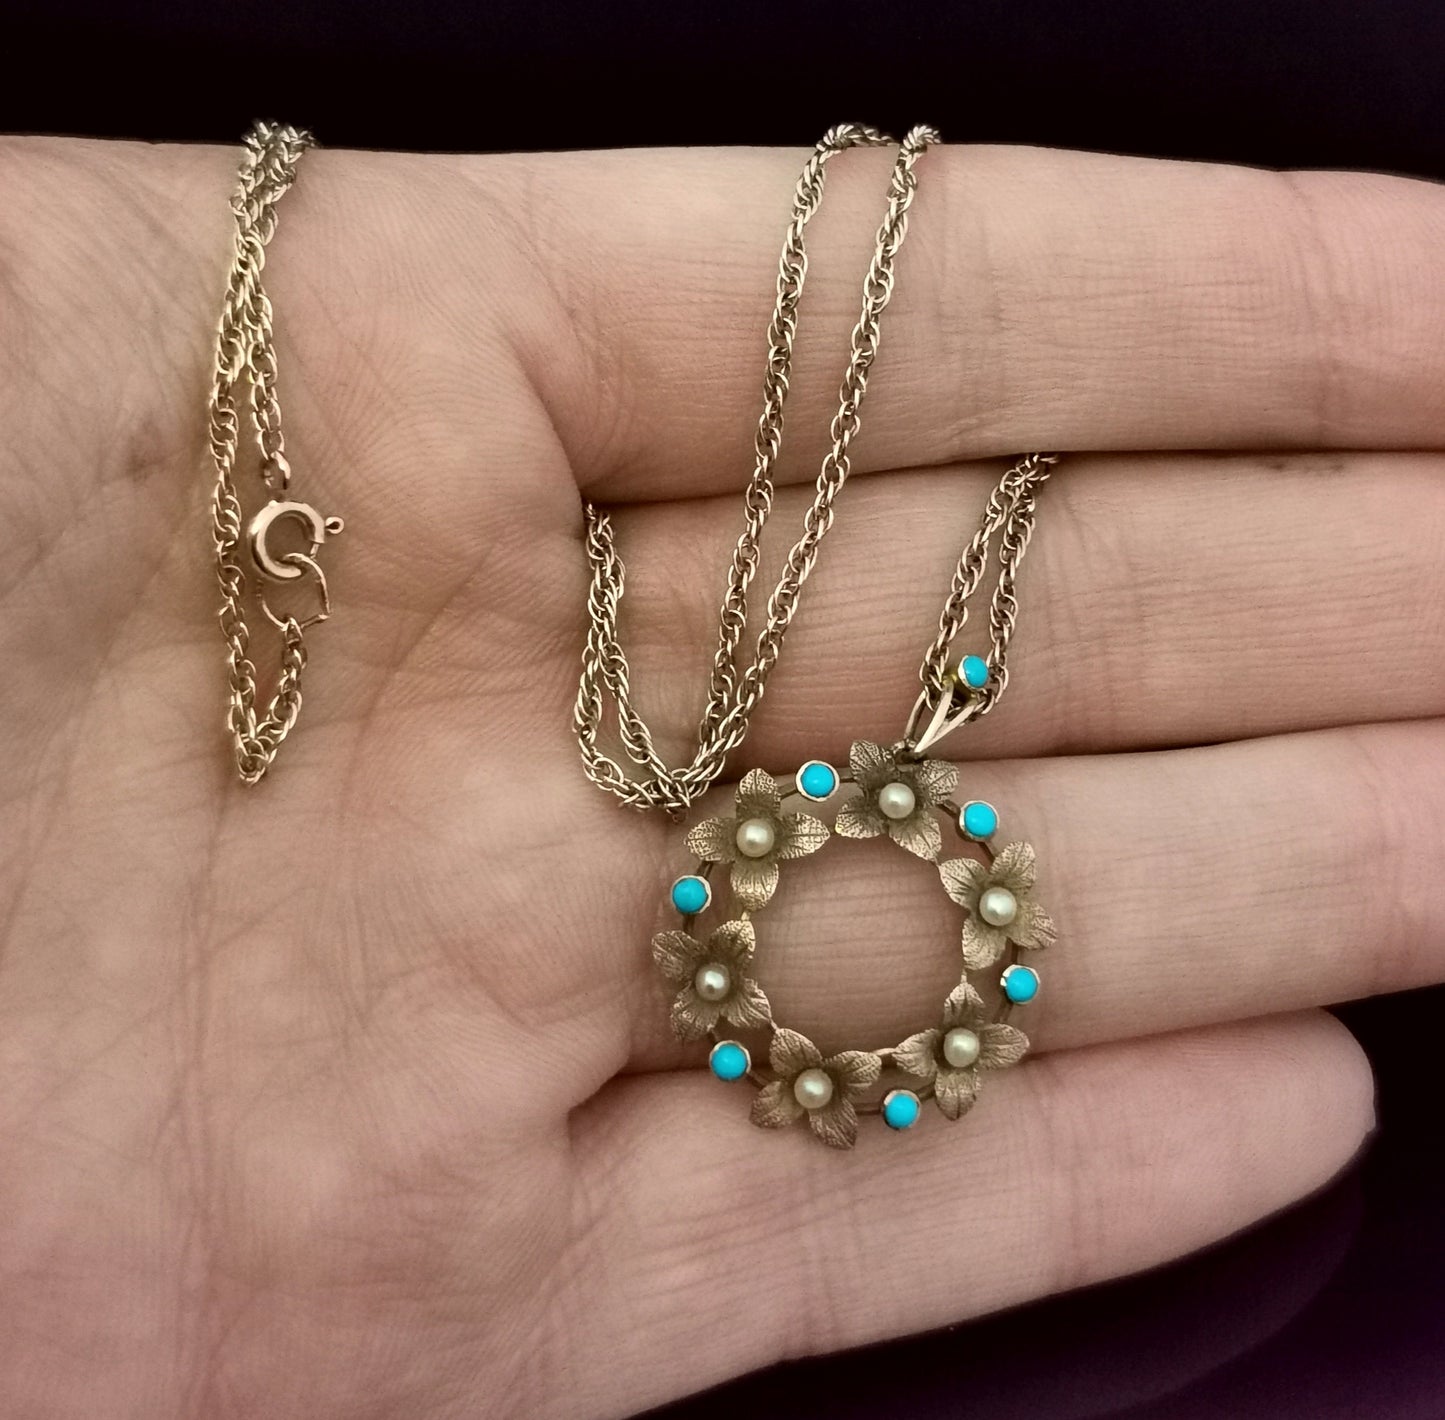 Antique Art Nouveau floral pendant, 15ct gold l, pearl and turquoise, necklace